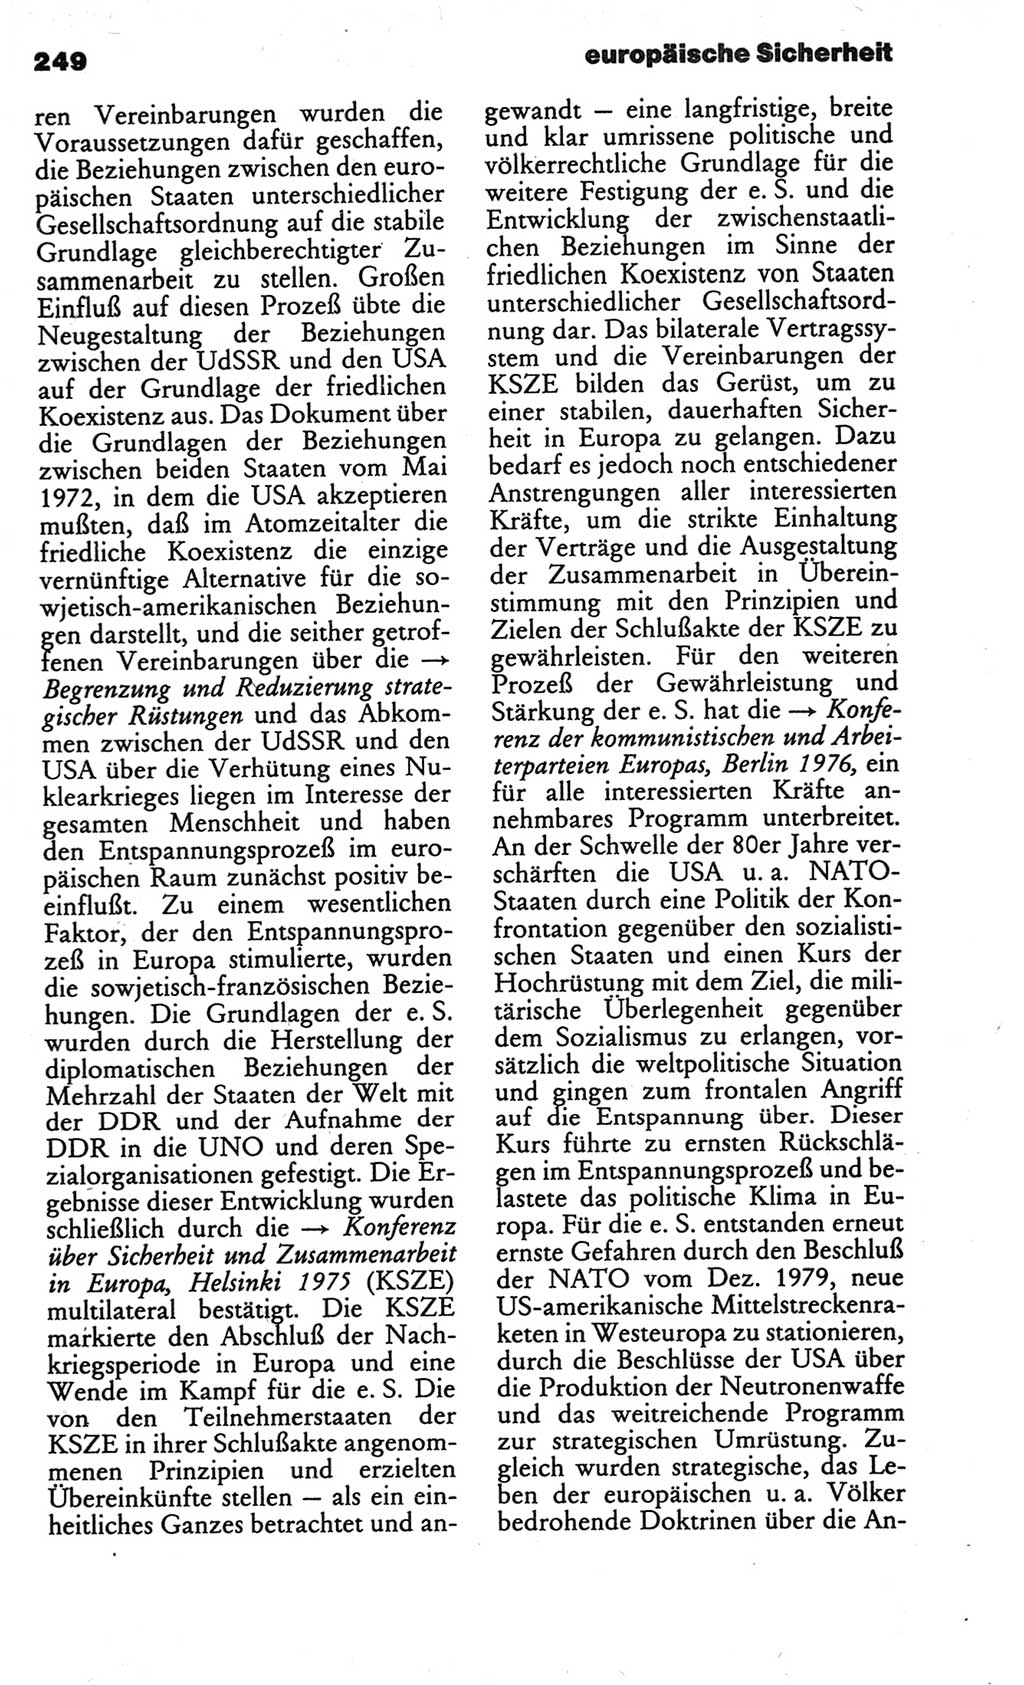 Kleines politisches Wörterbuch [Deutsche Demokratische Republik (DDR)] 1986, Seite 249 (Kl. pol. Wb. DDR 1986, S. 249)